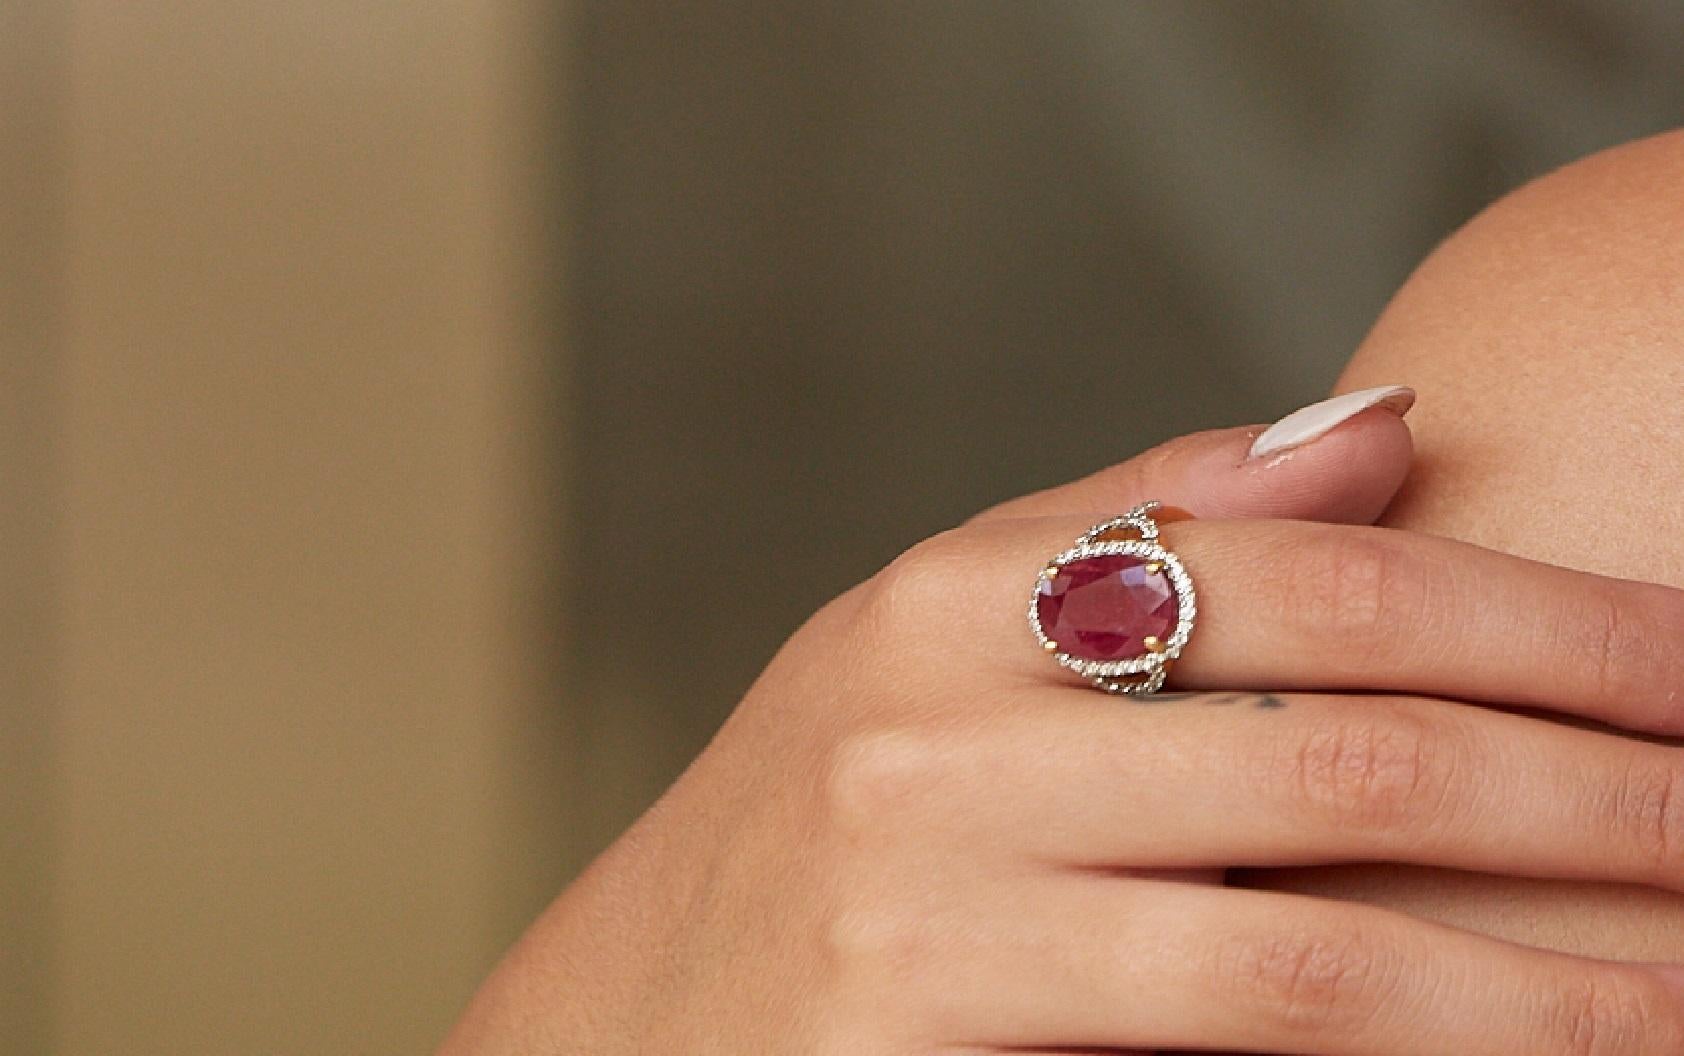 Tresor Diamantring mit 0,67 Karat Diamanten und 6,72 Karat Rubinen in 18 Karat Weißgold. Die Ringe sind eine Ode an die luxuriöse und doch klassische Schönheit mit funkelnden Diamanten. Ihr zeitgemäßes und modernes Design macht sie vielseitig